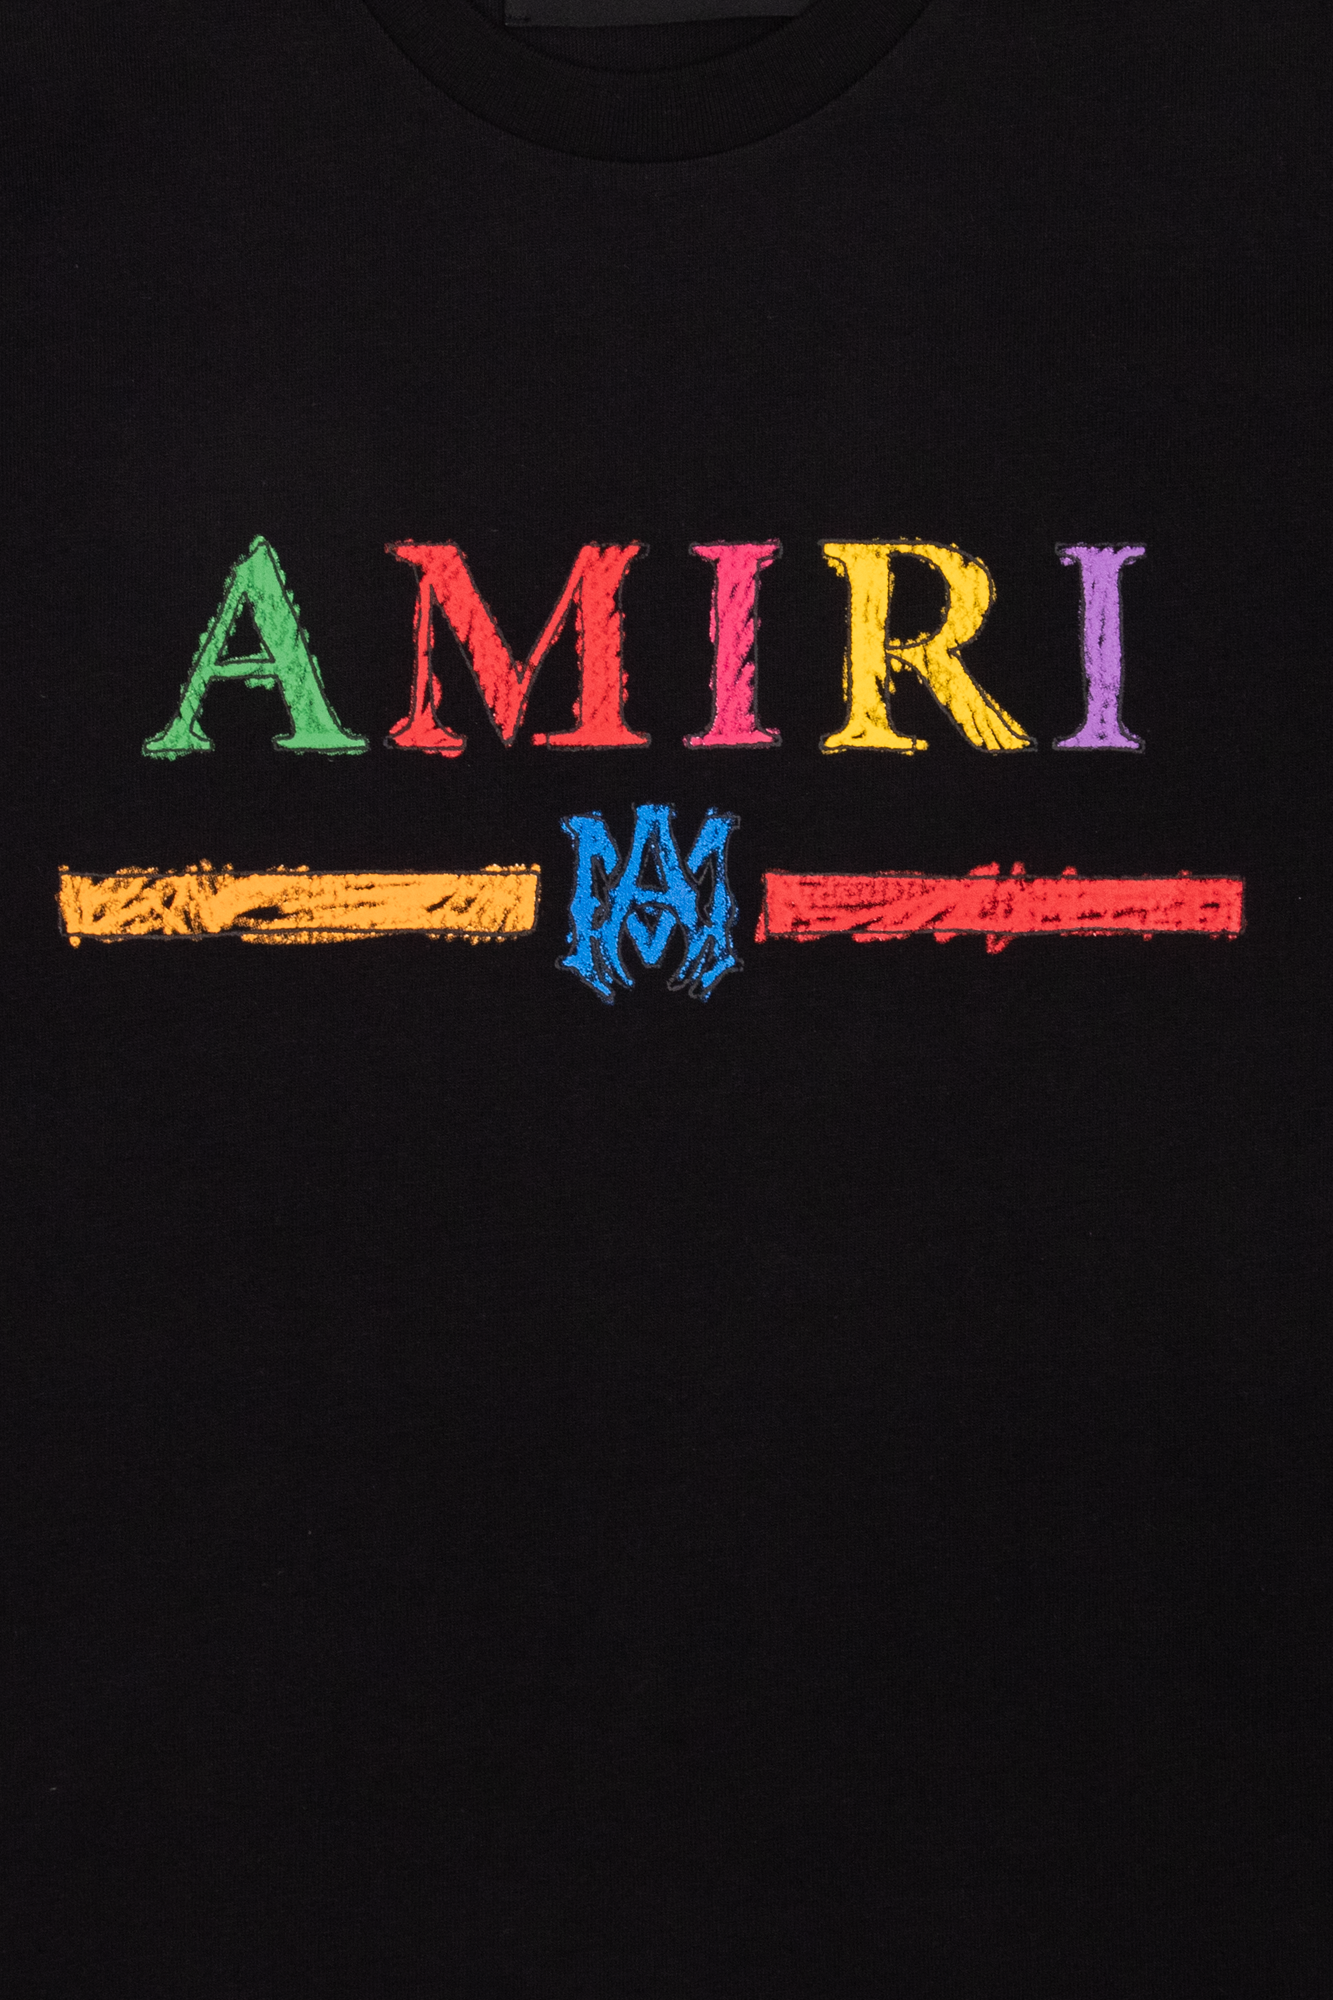 Amiri Kids New Look long sleeve sweatshirt with collar in blue